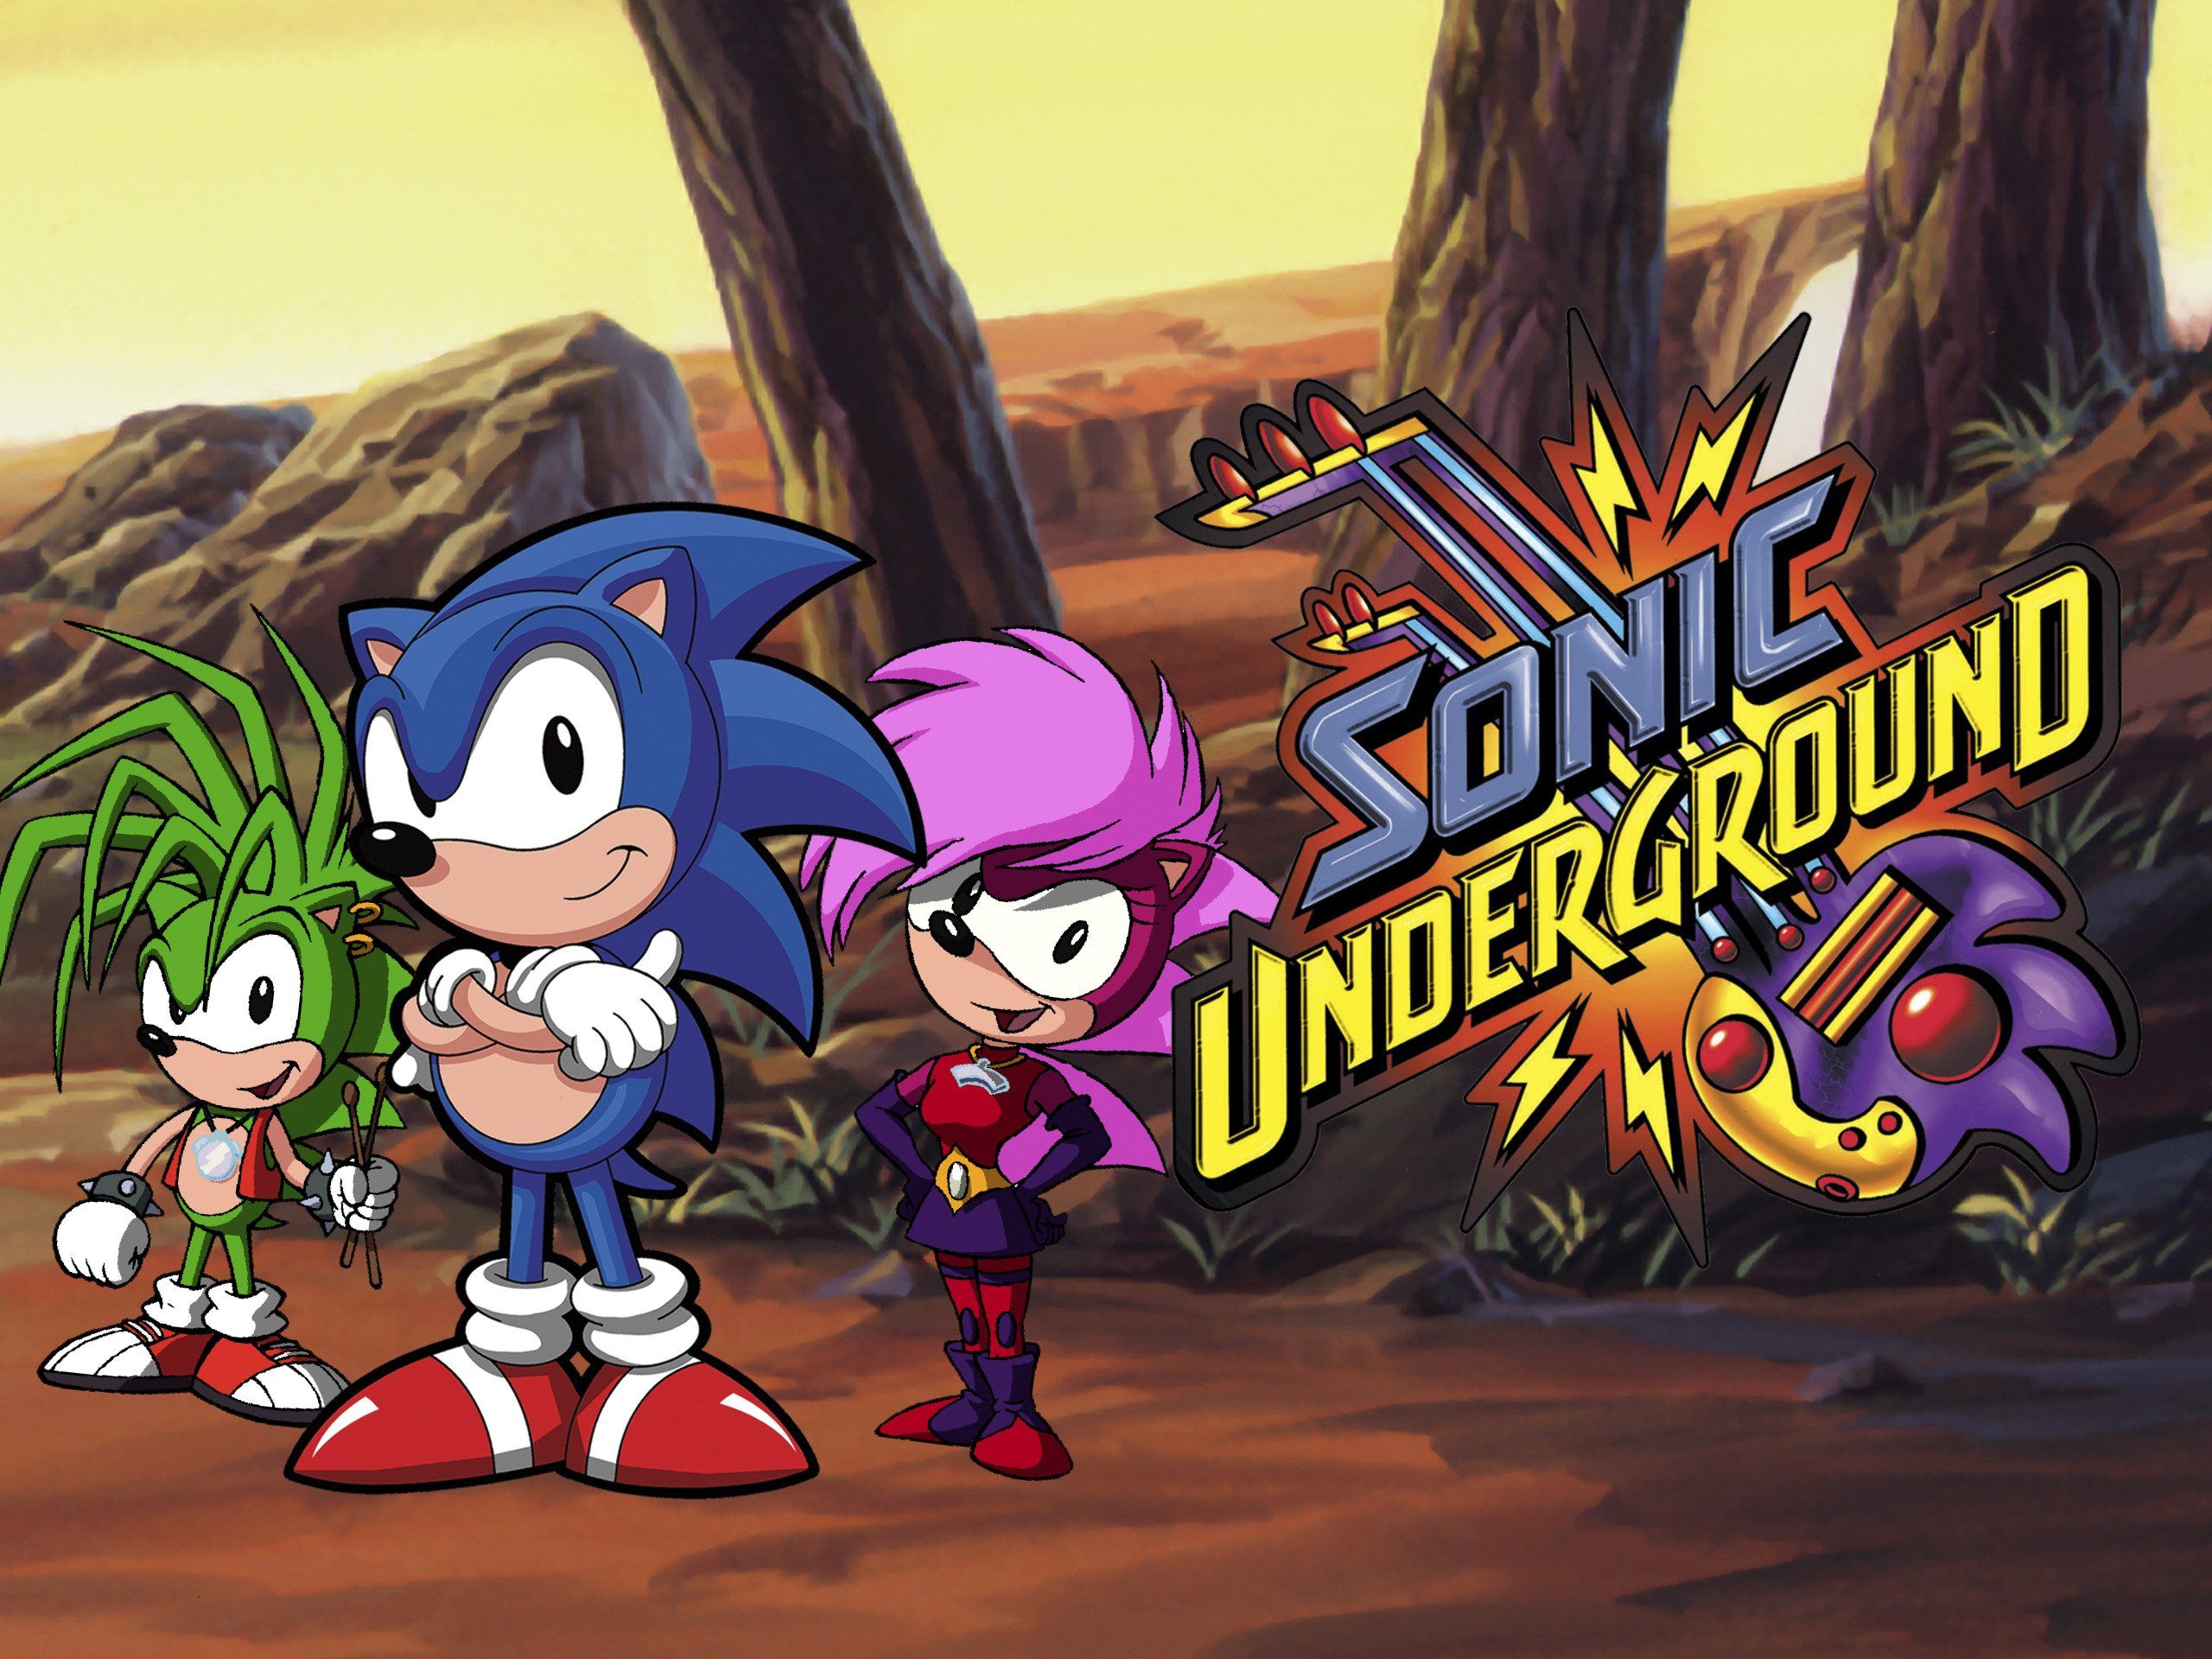 Sonic Underground: Volume 1